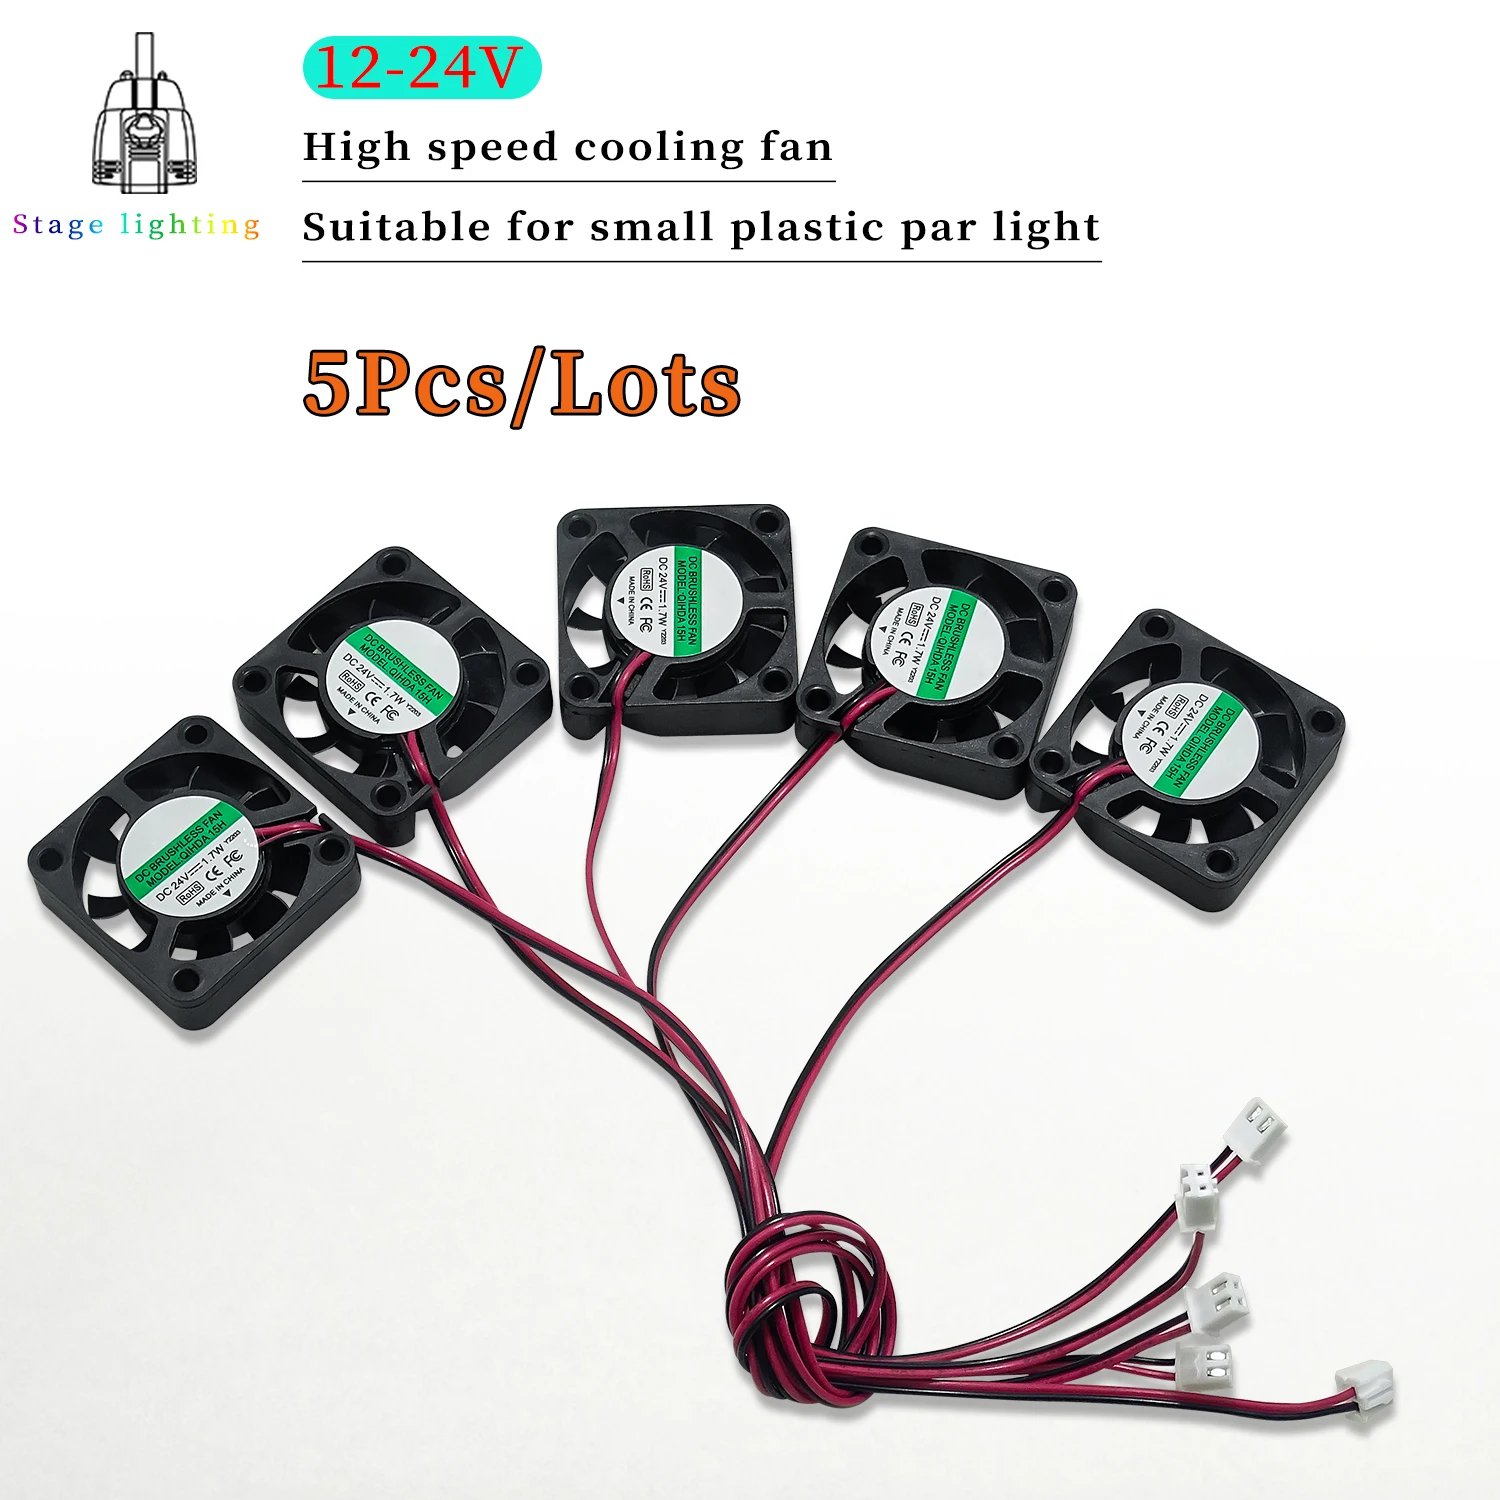 5 Pcs 12v or 24v 4x4cm Silent fan For 7x10w 7x12w 18x3w 12x12w Led Plastic PAR Light Repair parts Stage light accessories